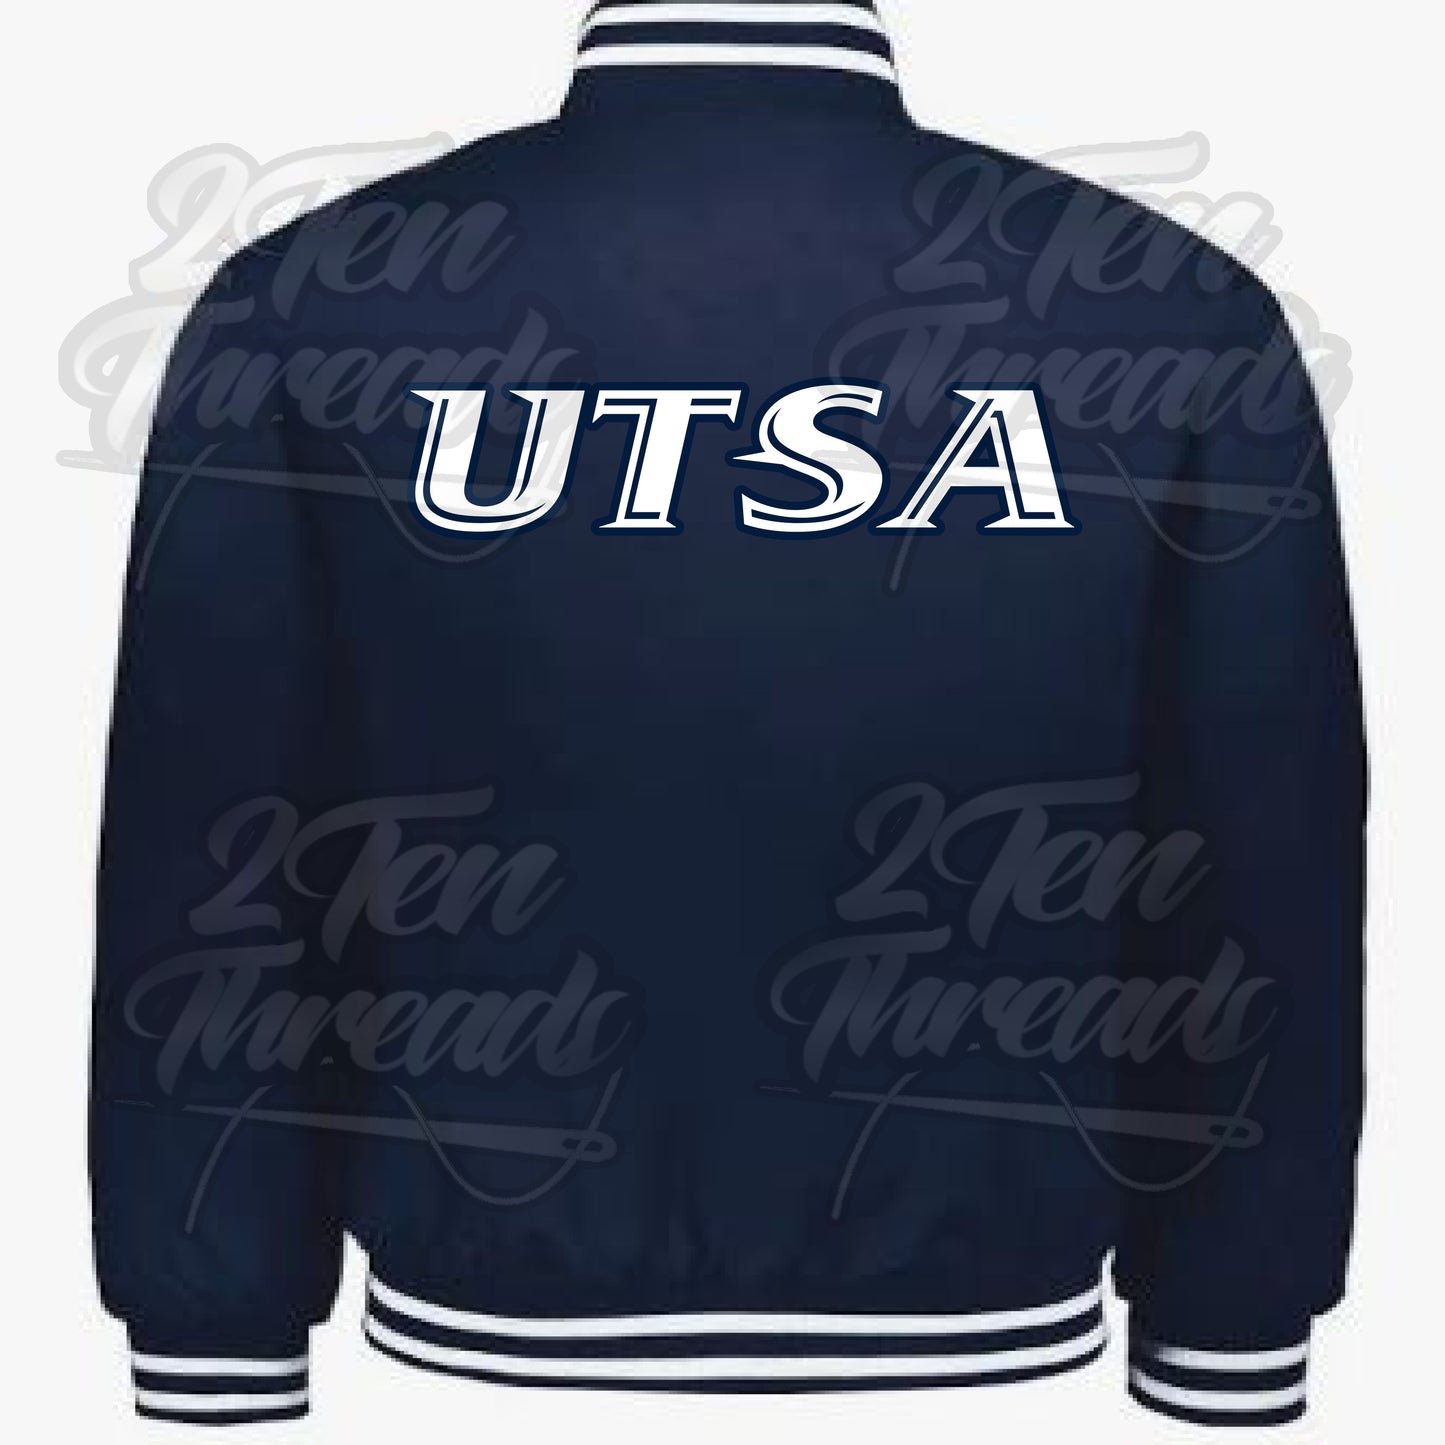 UTSA Heritage Jacket